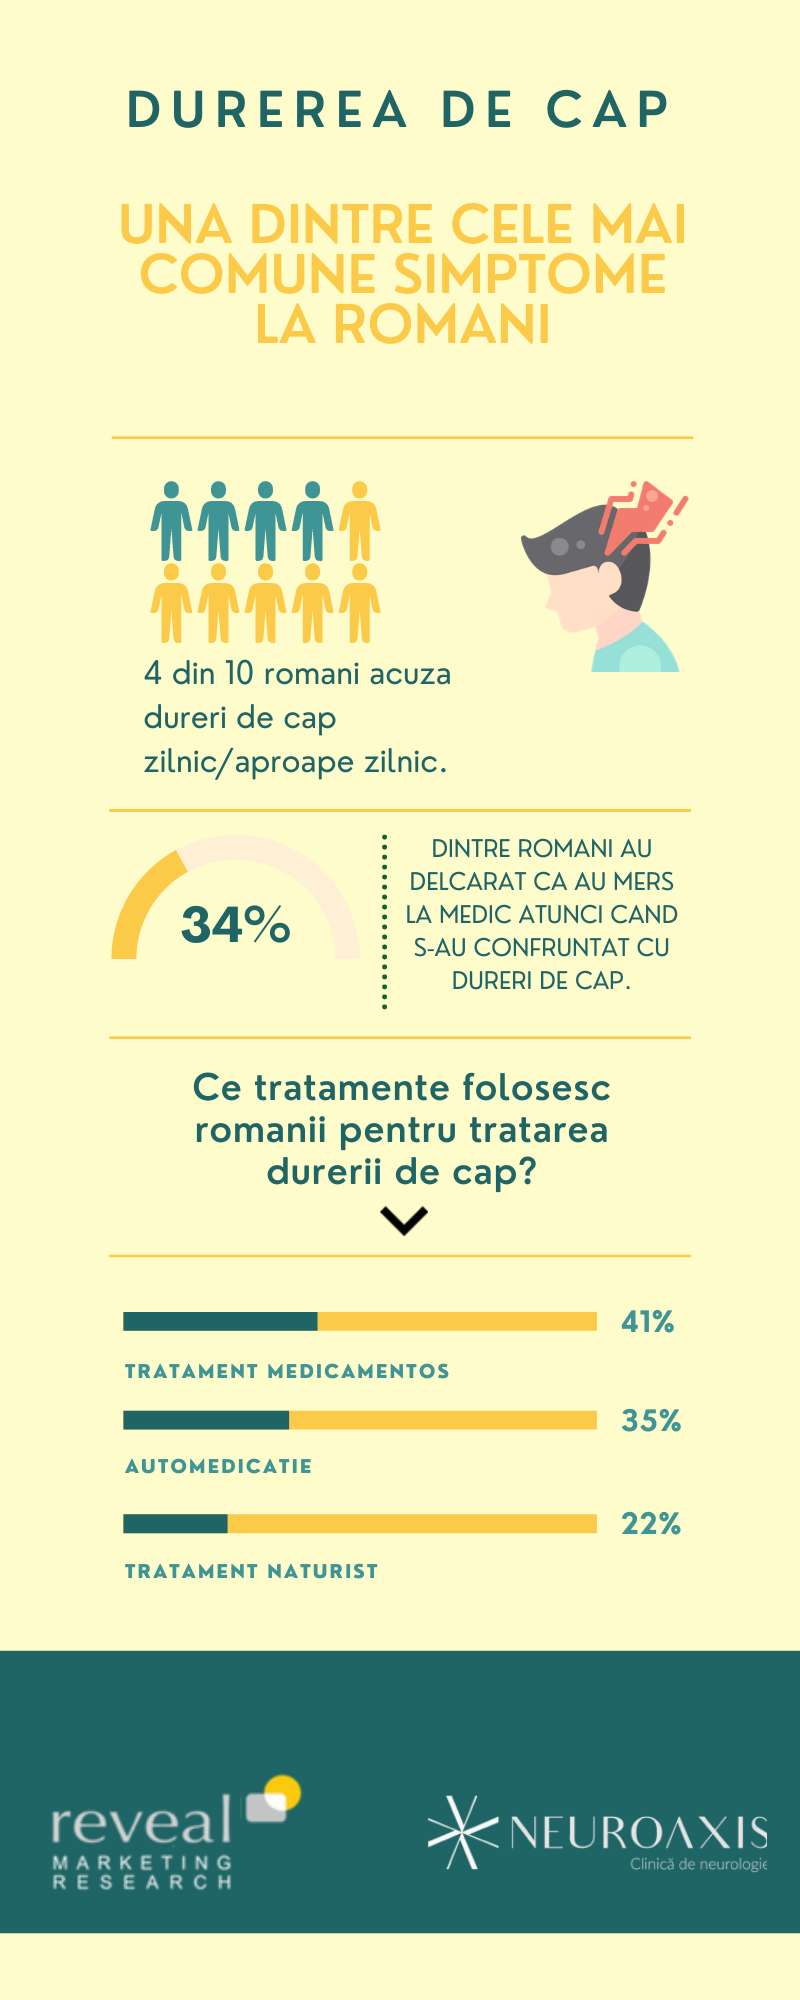 13% dintre români au dureri de cap câteva ori pe săptămână